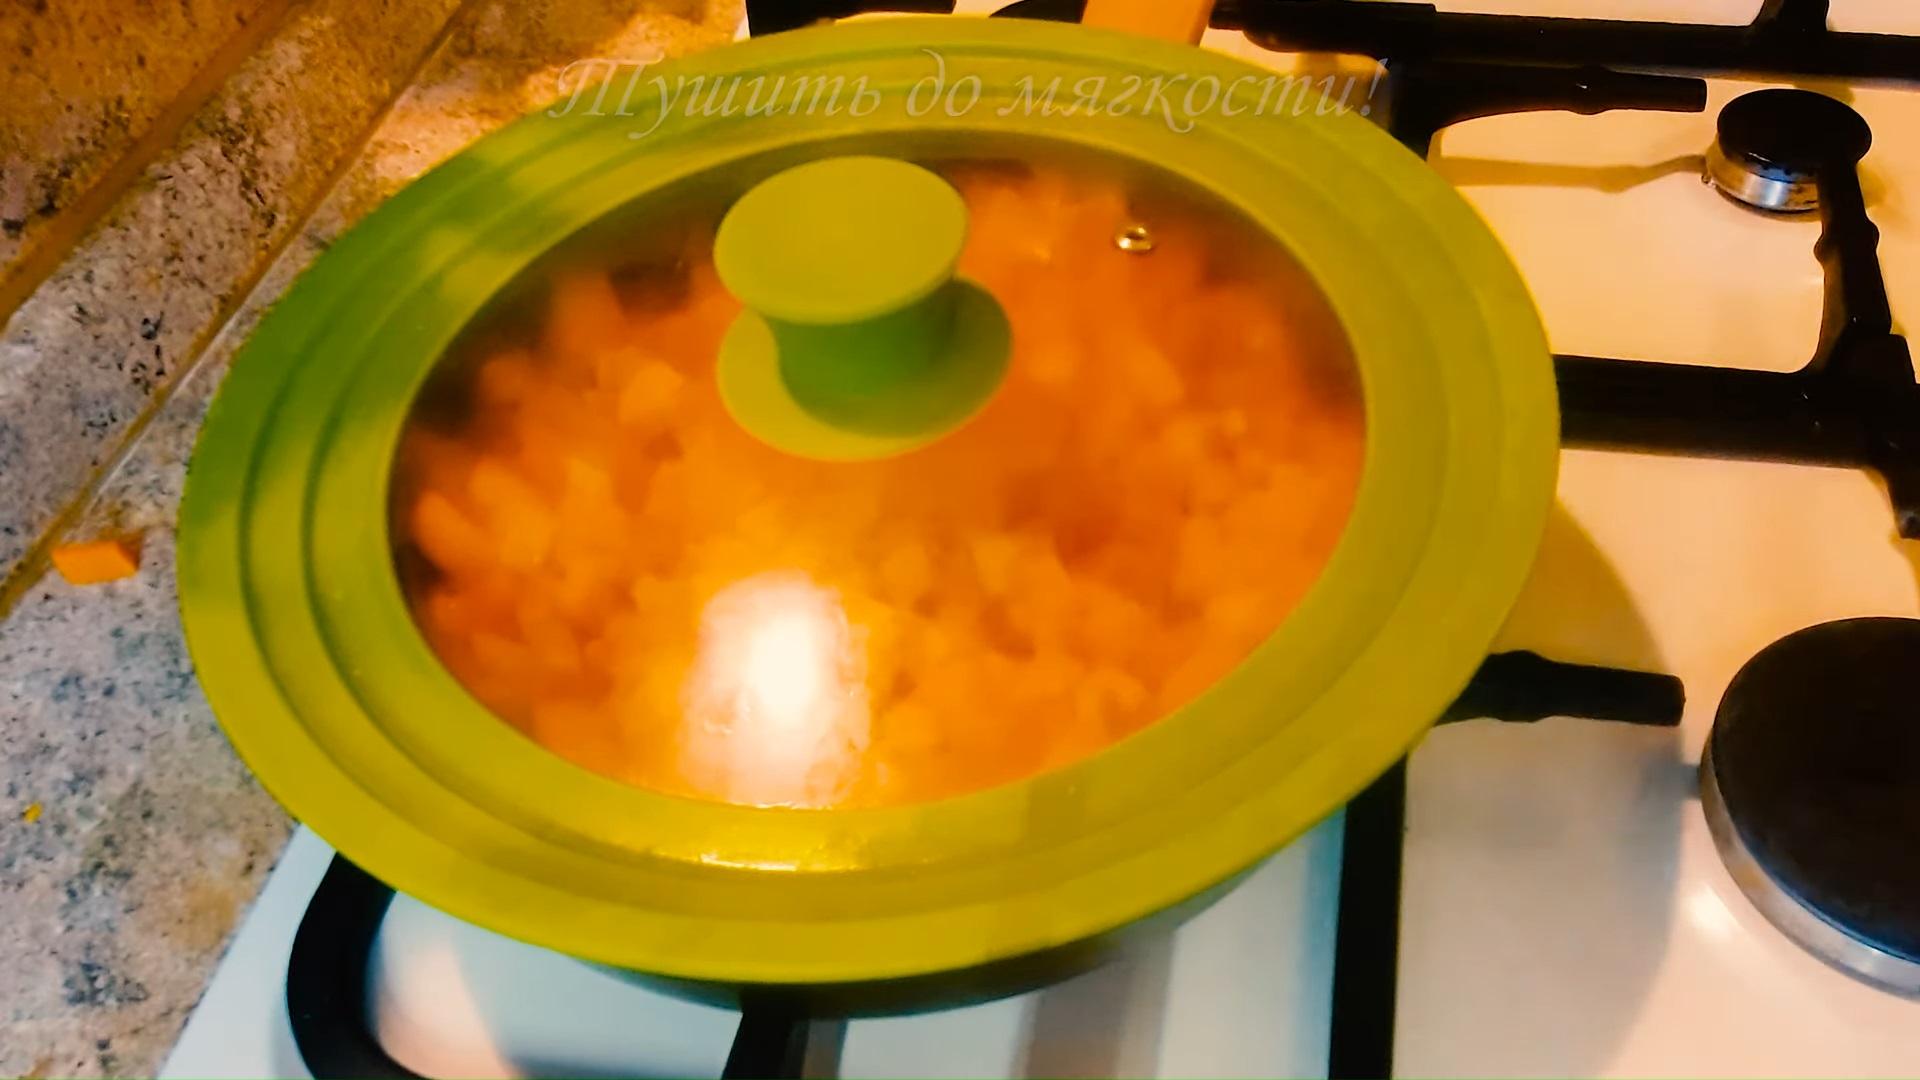 Рецепт - Как приготовить морковное джелато в домашних условиях? - Шаг 1